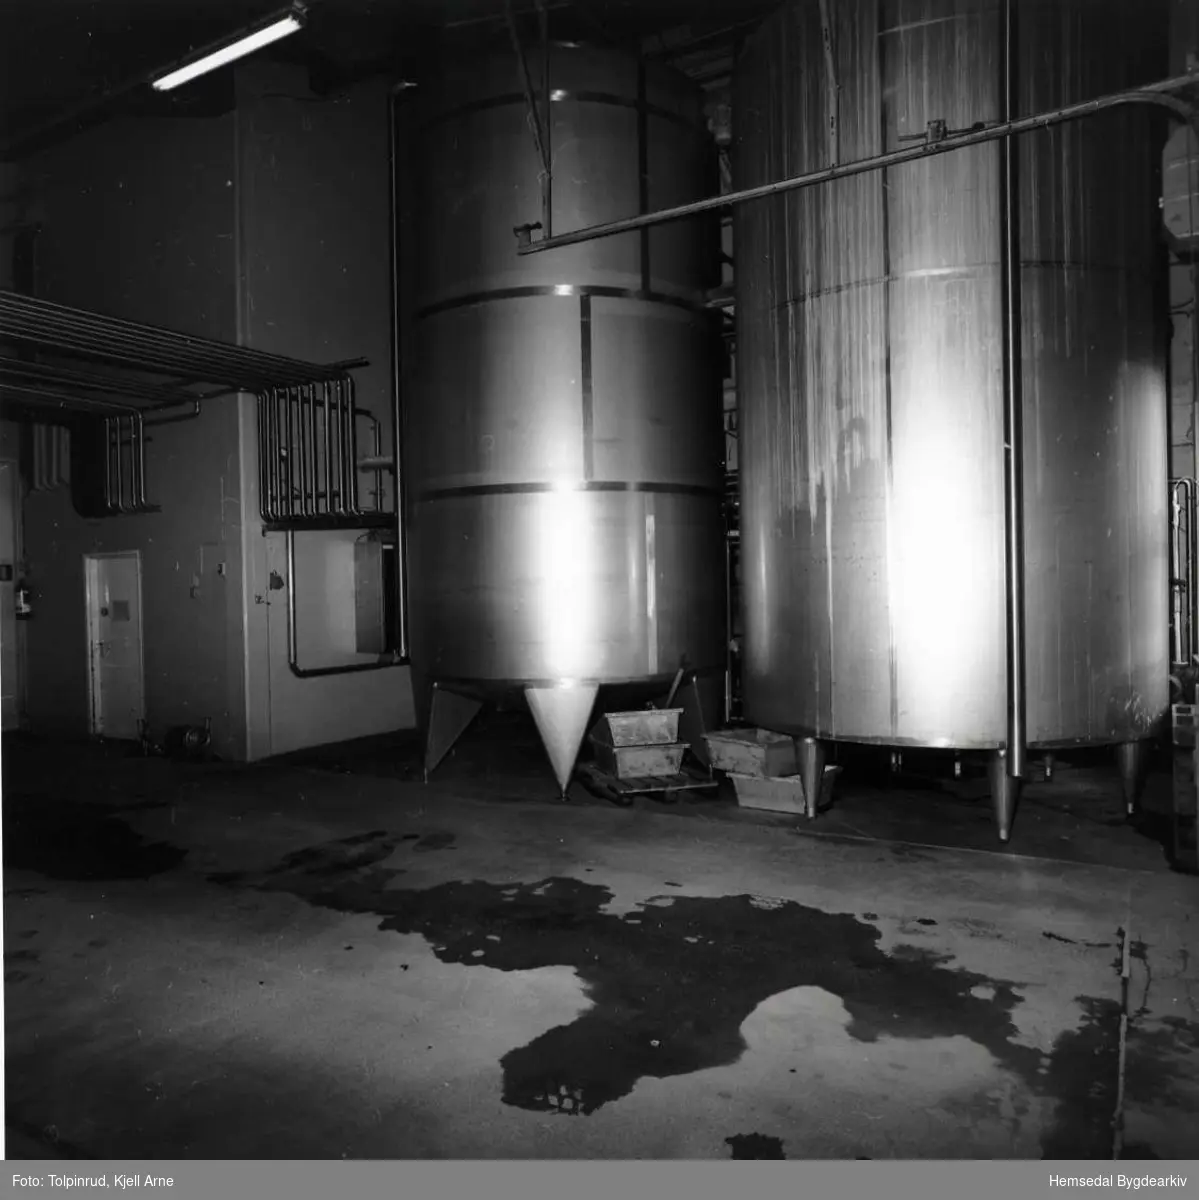 Hemsedal meieri vart nedlagt 21. juli 2001.
Tankbilhallen. To tankar for geitemjølk. Kvar tank romma 30ooo liter